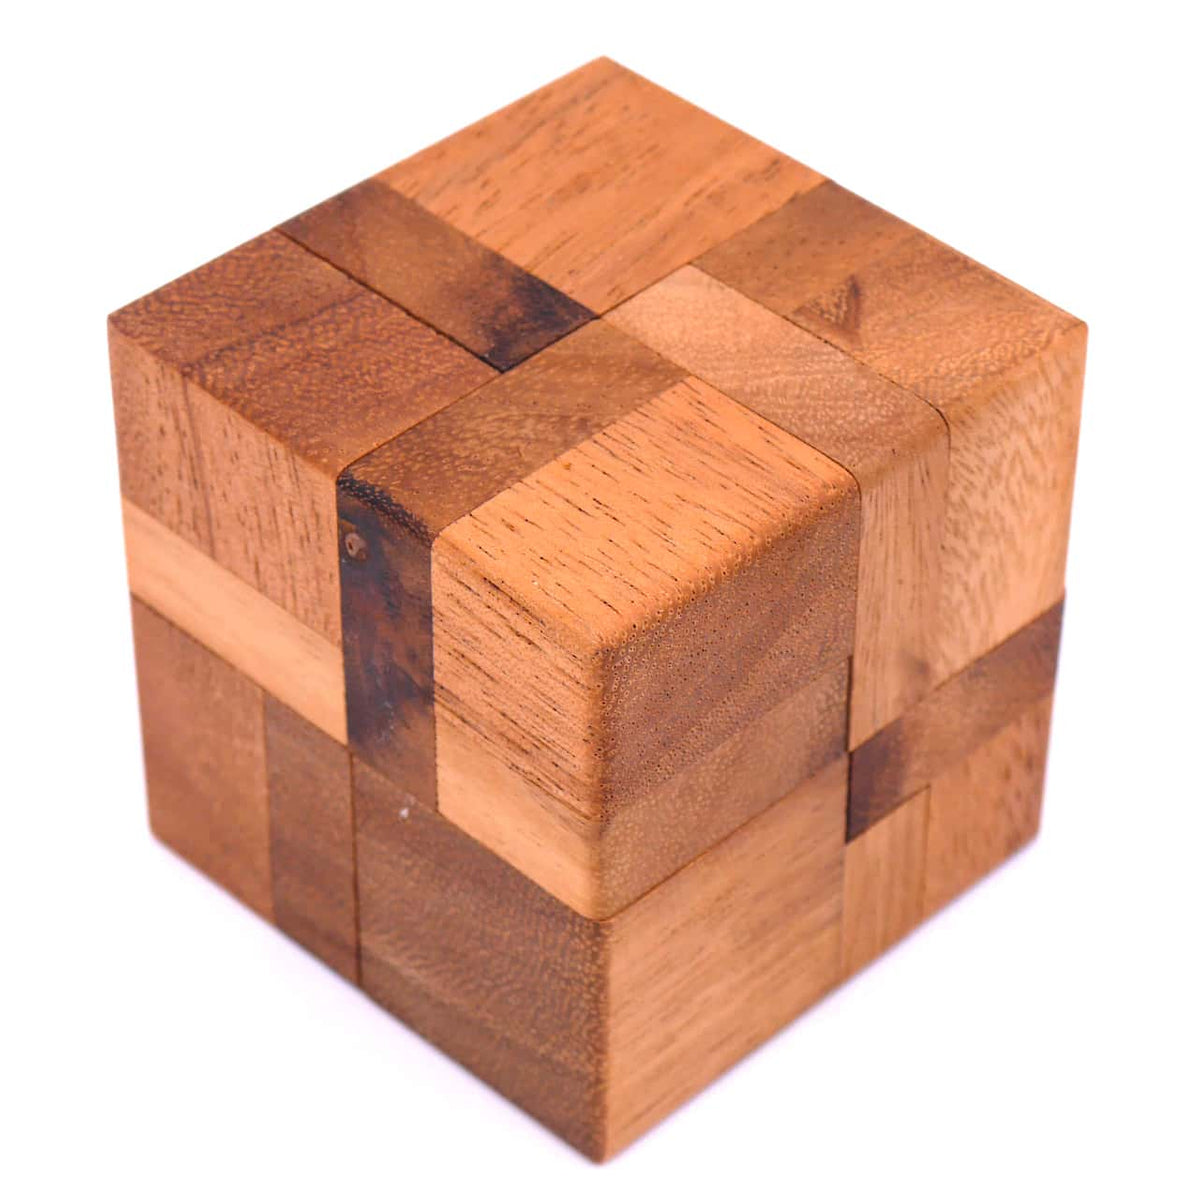 Das zusammengesetzte Denkspiel aus Holz mit 6 Teilen.